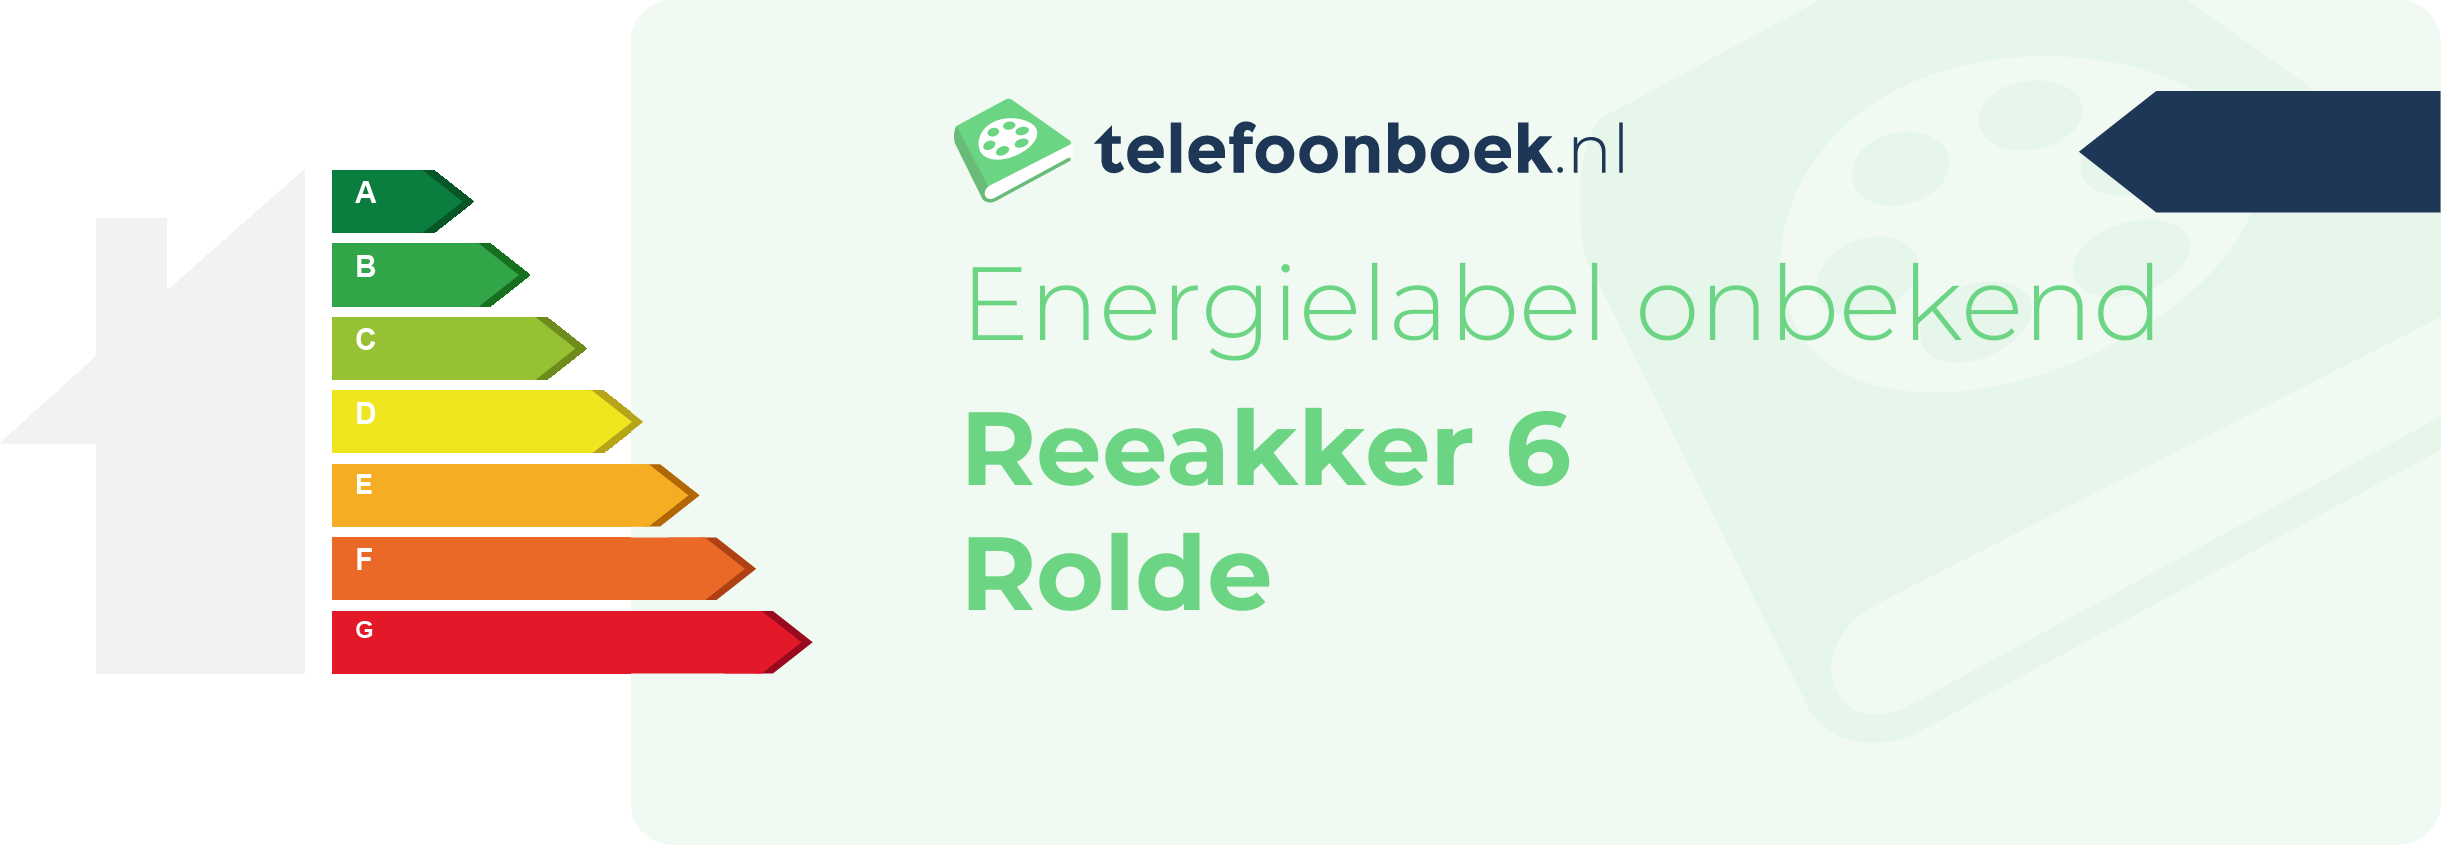 Energielabel Reeakker 6 Rolde